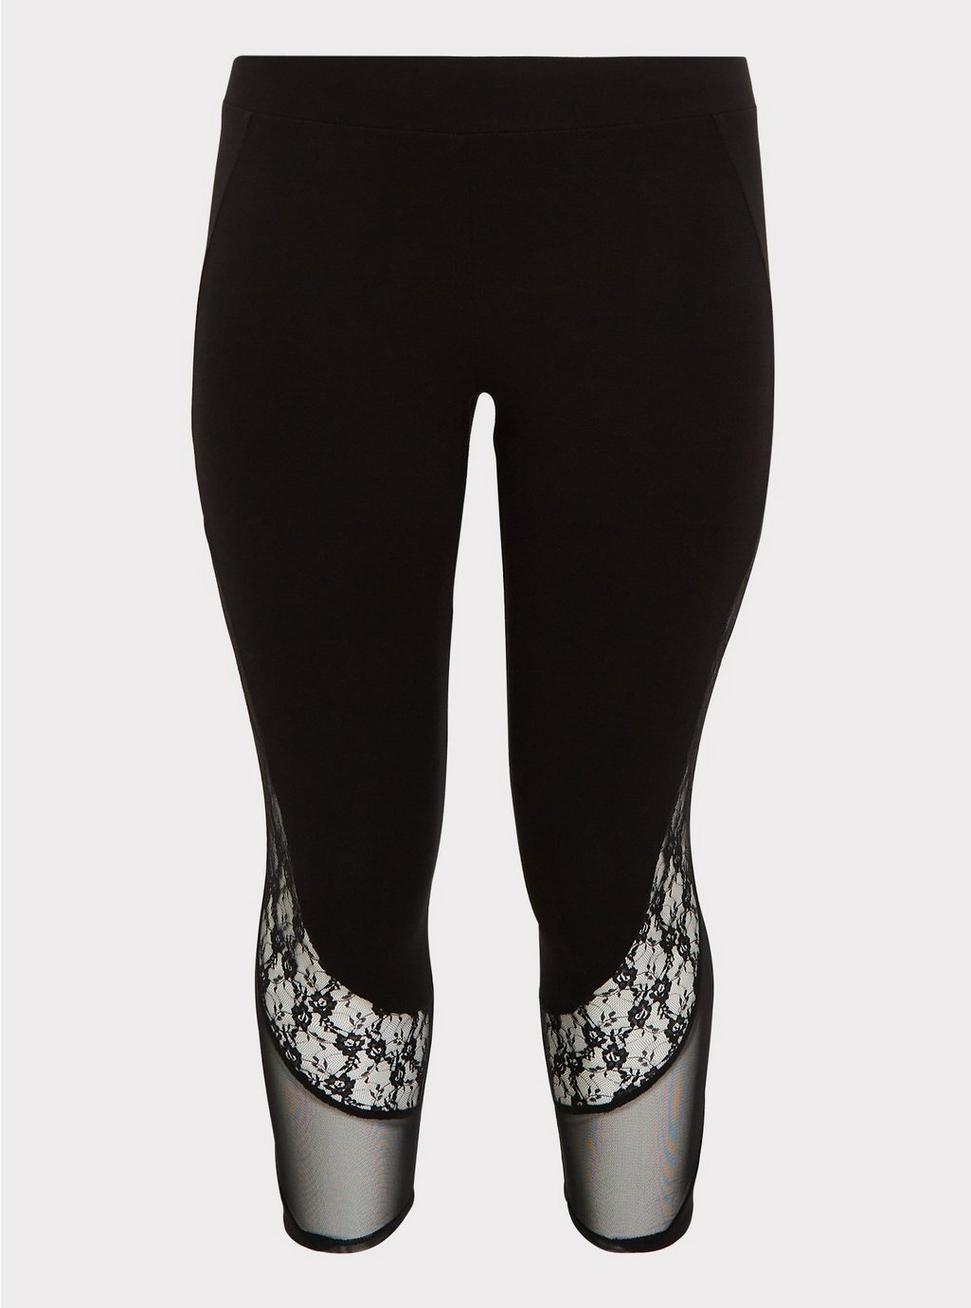 Plus Size - Crop Premium Legging - Mesh & Lace Inset Black - Torrid